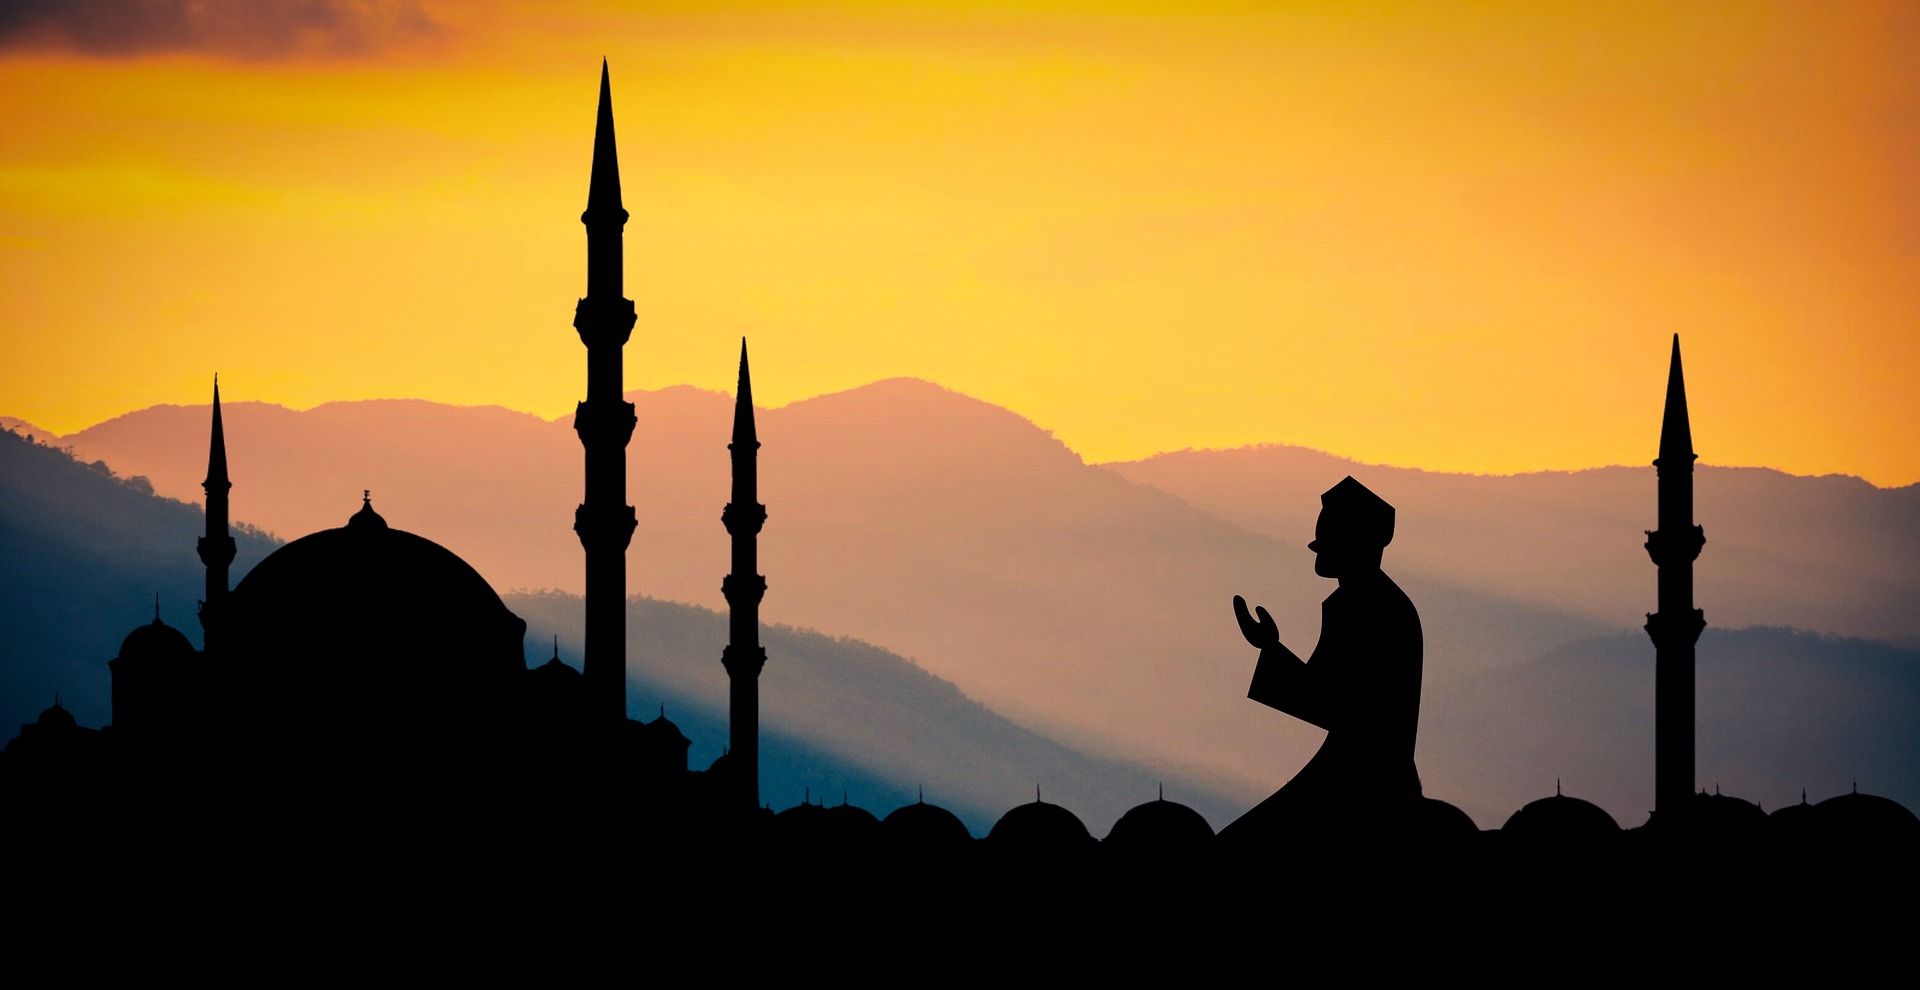 Doa menyambut awal bulan Ramadhan dan artinya sesuai sunnah, doa Ramadhan Allahumma Salimna dan bacaan allahumma ahillahu.